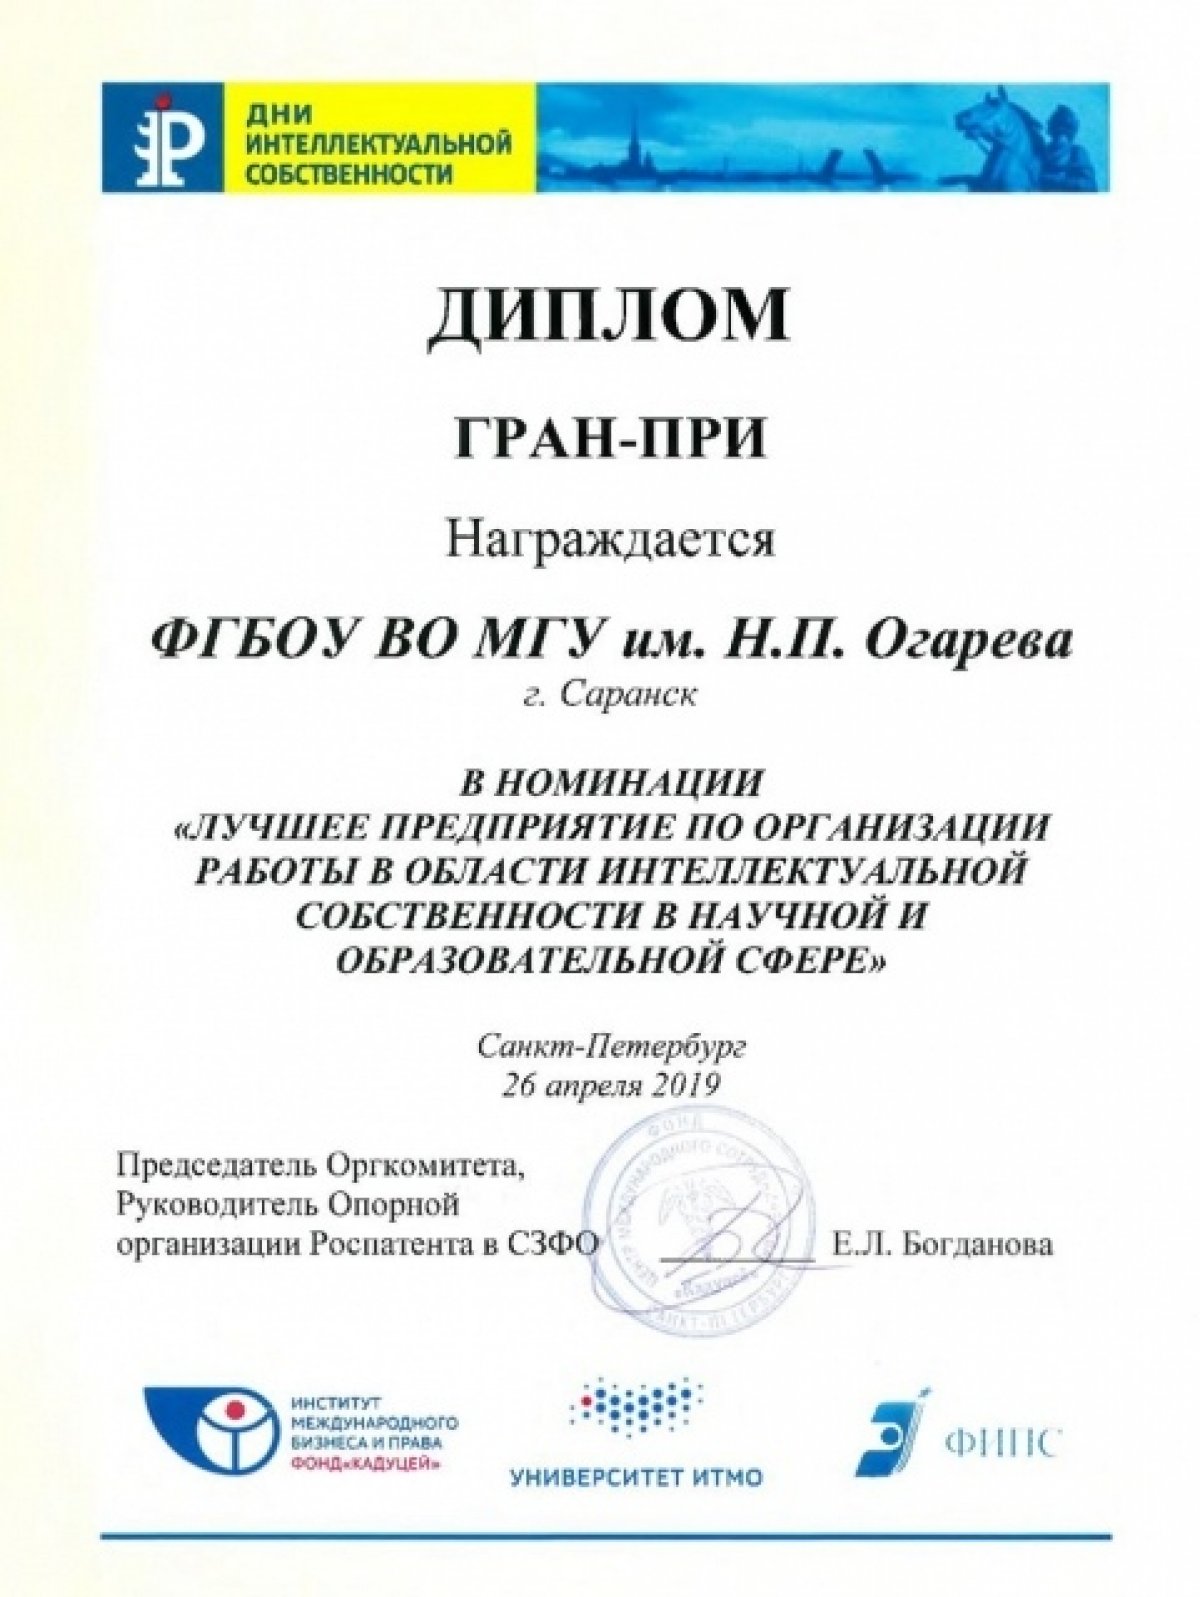 💡🏆Мордовский университет получил дипломы во Всероссийском конкурсе «За вклад в развитие интеллектуальной собственности»